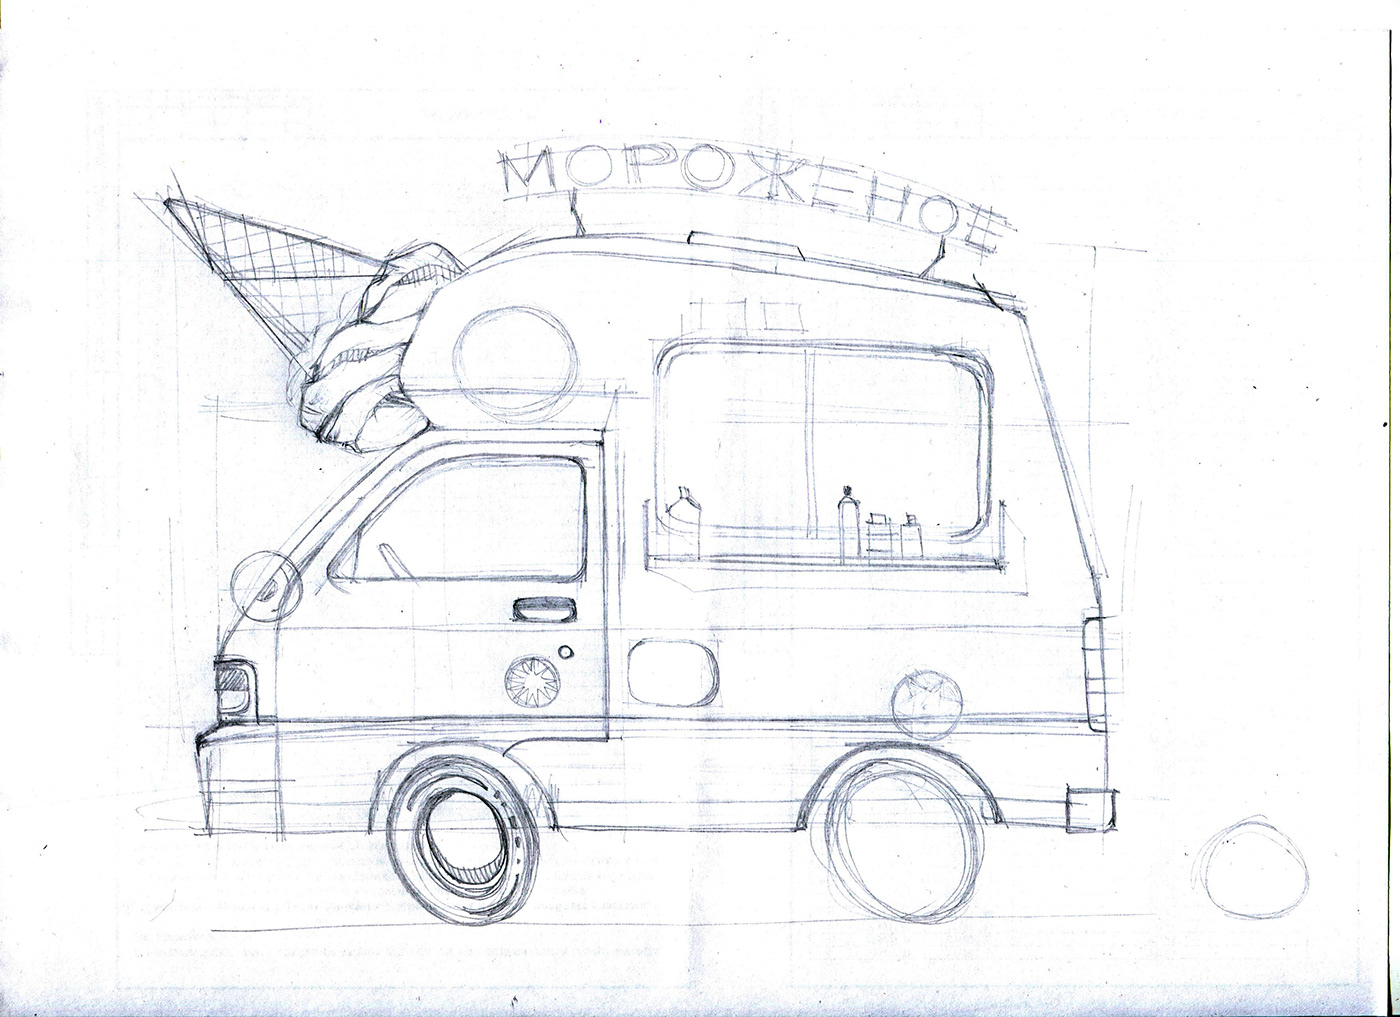 adobe illustrator car cartoon dessert digital illustration ice cream summer Transport unicorn vector